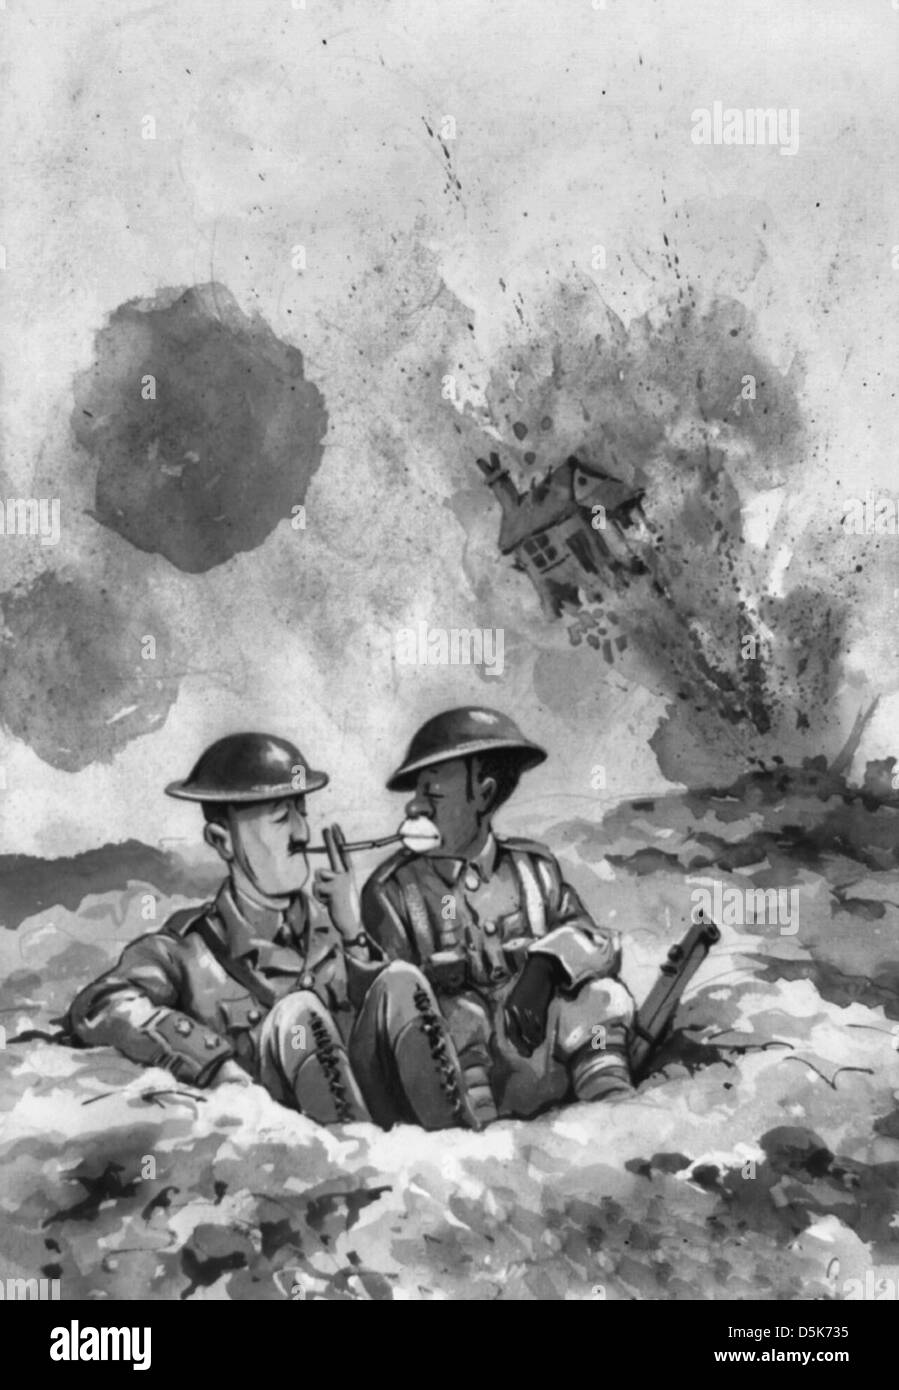 La croissance de la démocratie - au milieu d'une bataille d'artillerie volante, deux soldats de l'armée britannique, l'un blanc et l'autre noir, s'asseoir dans une tranchée de cigarettes d'éclairage. Au loin une maison explose. Banque D'Images